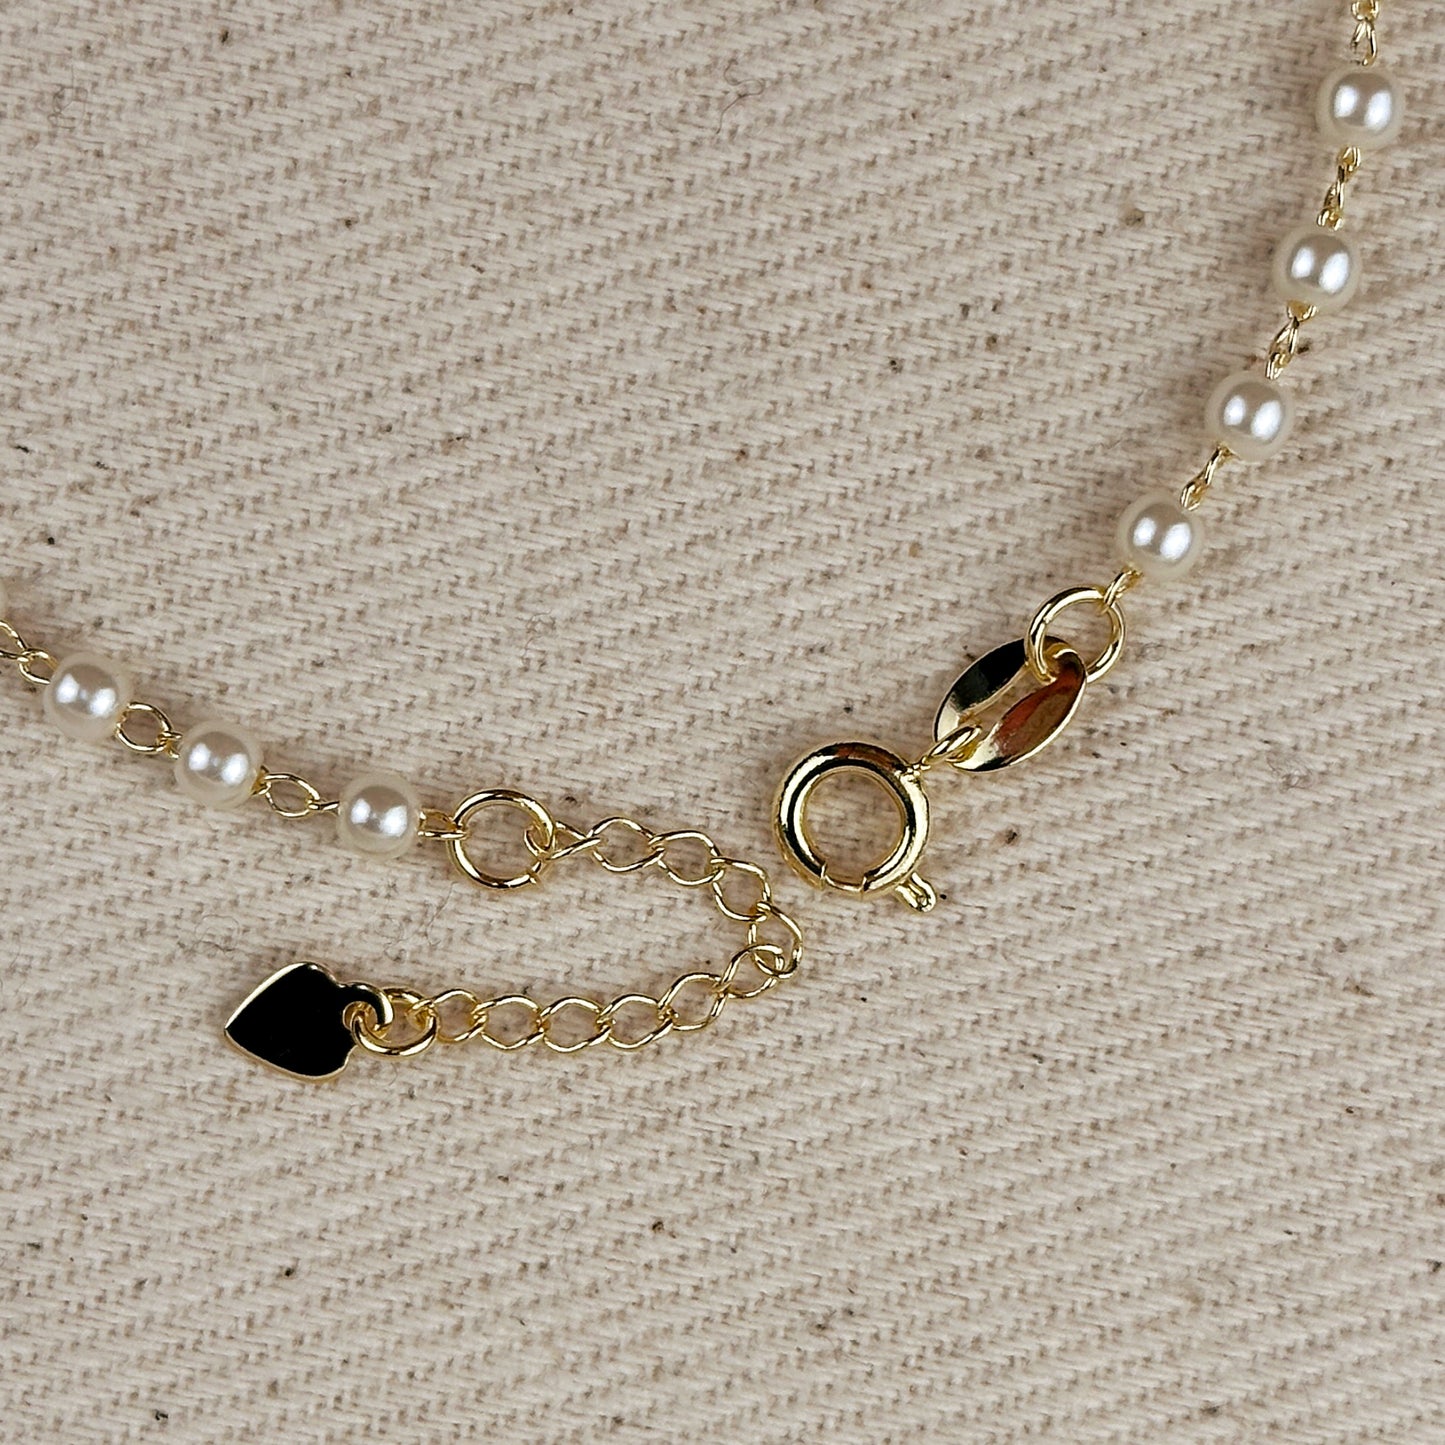 18k Gold Filled 3mm Pearl Bracelet